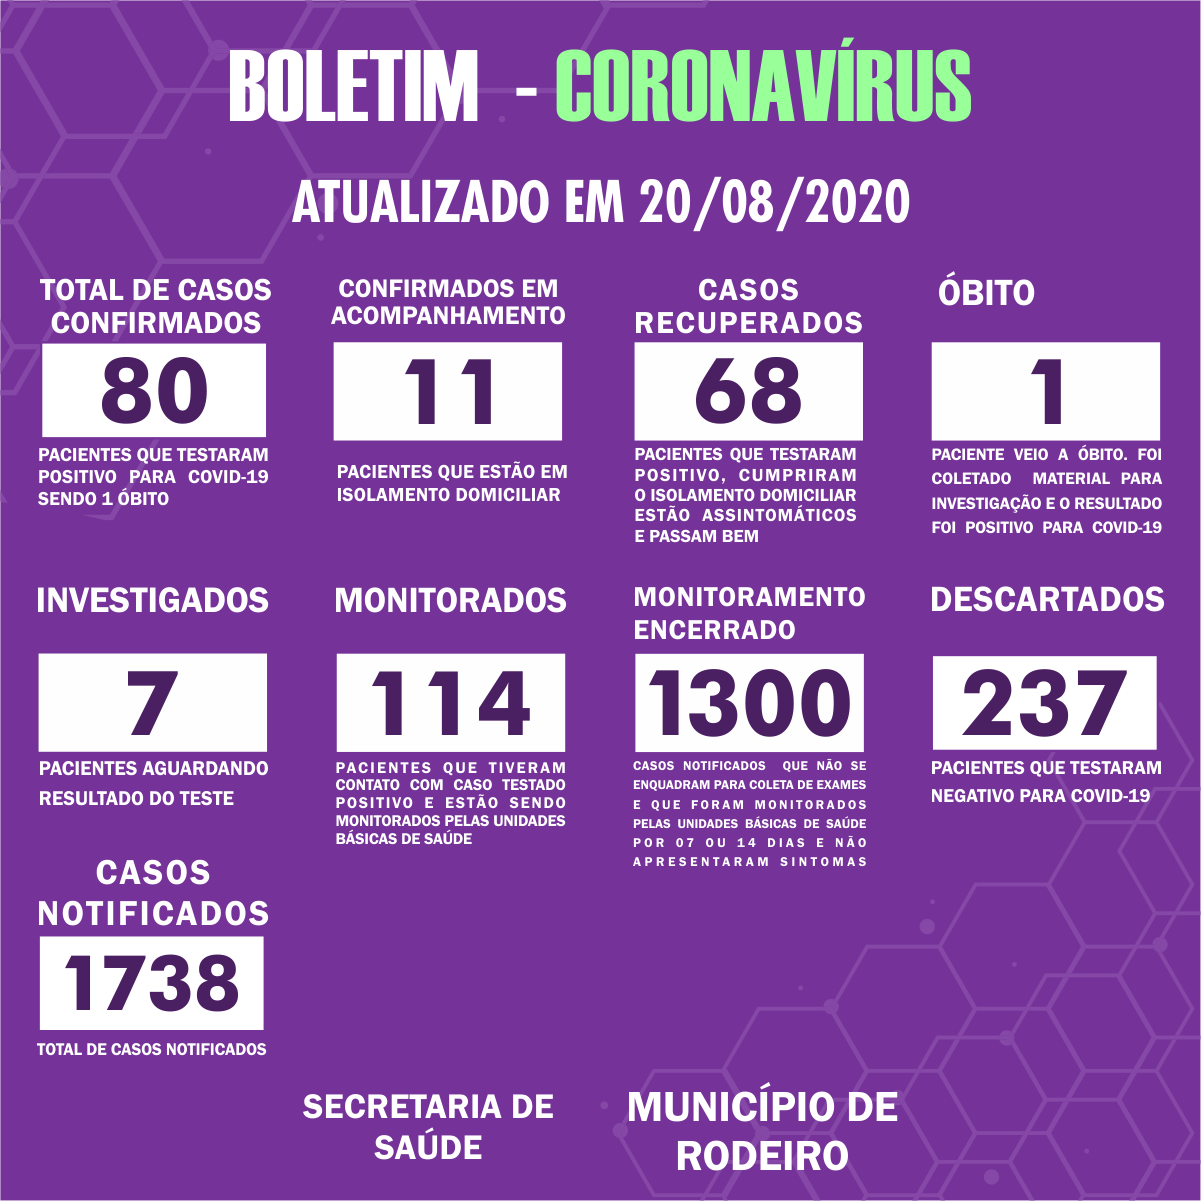 Boletim Epidemiológico do Município de Rodeiro sobre coronavírus, atualizado em 20/08/2020.